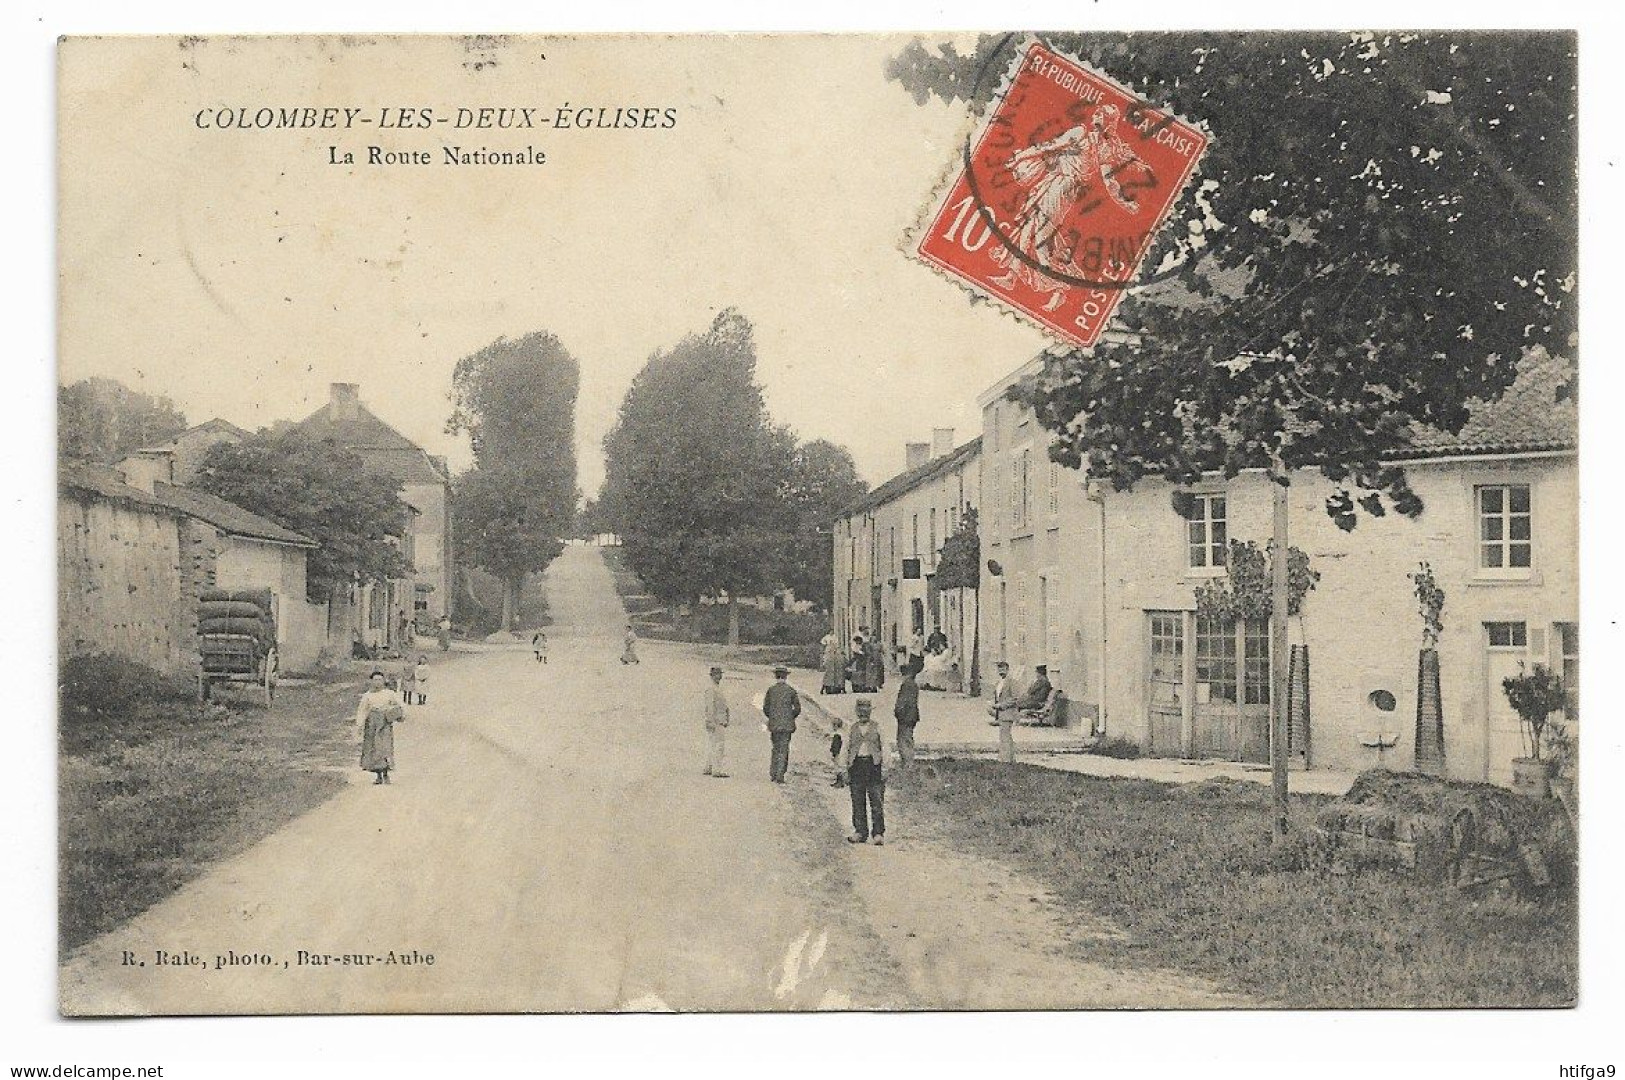 COLOMBEY Les 2 église 1912 HAUTE MARNE Maranville Châteauvillain Chaumont Joinville DE GAULLE Chalindrey Bar Sur Aube .. - Arc En Barrois